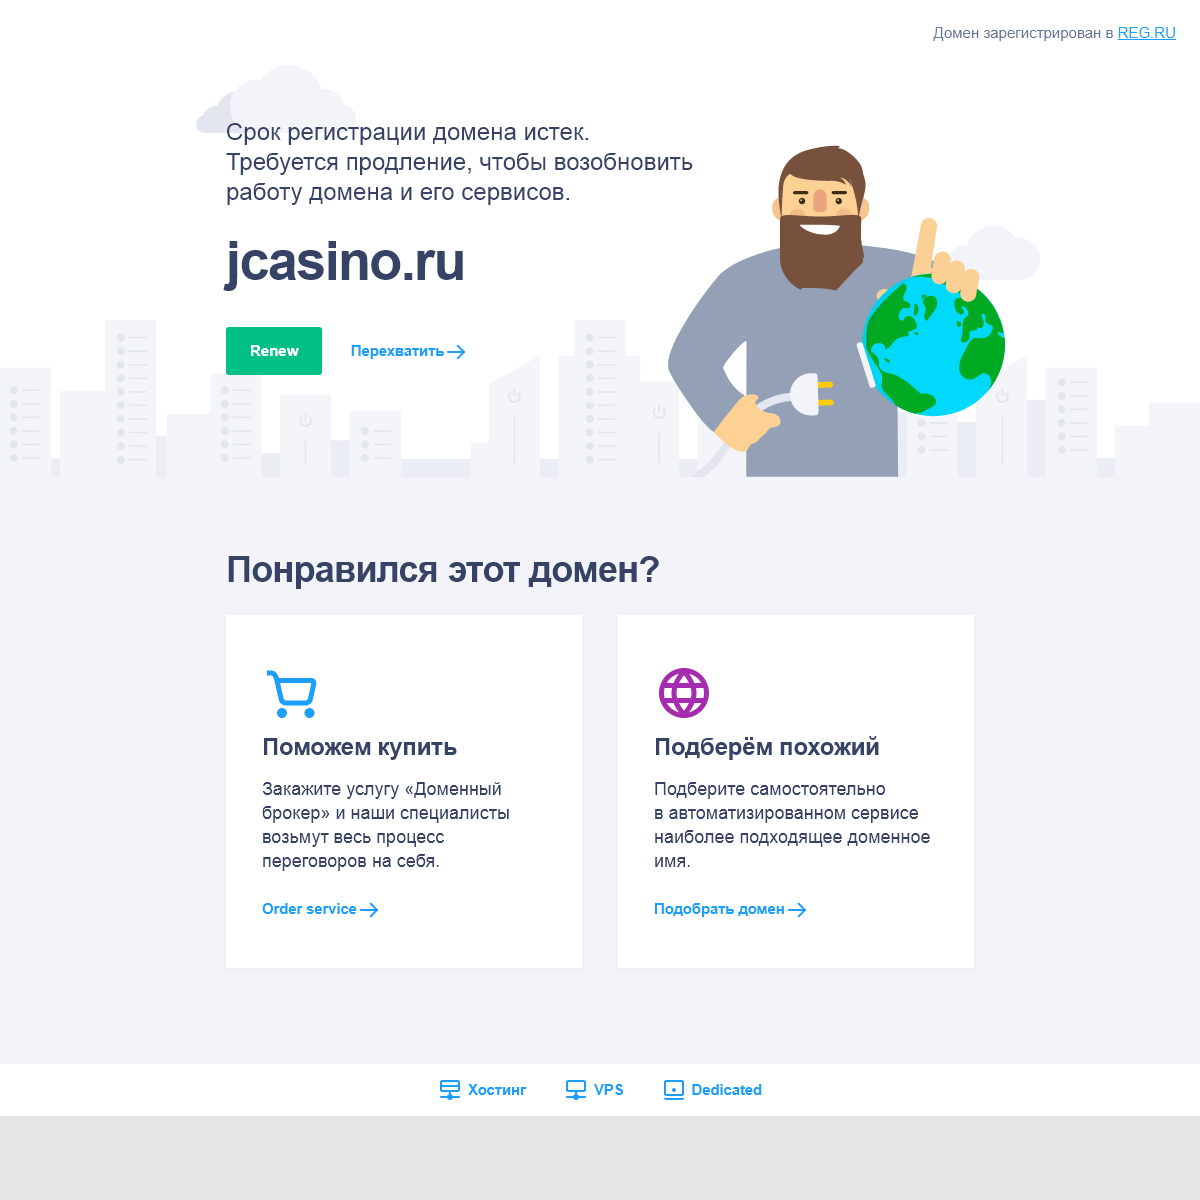 A complete backup of jcasino.ru